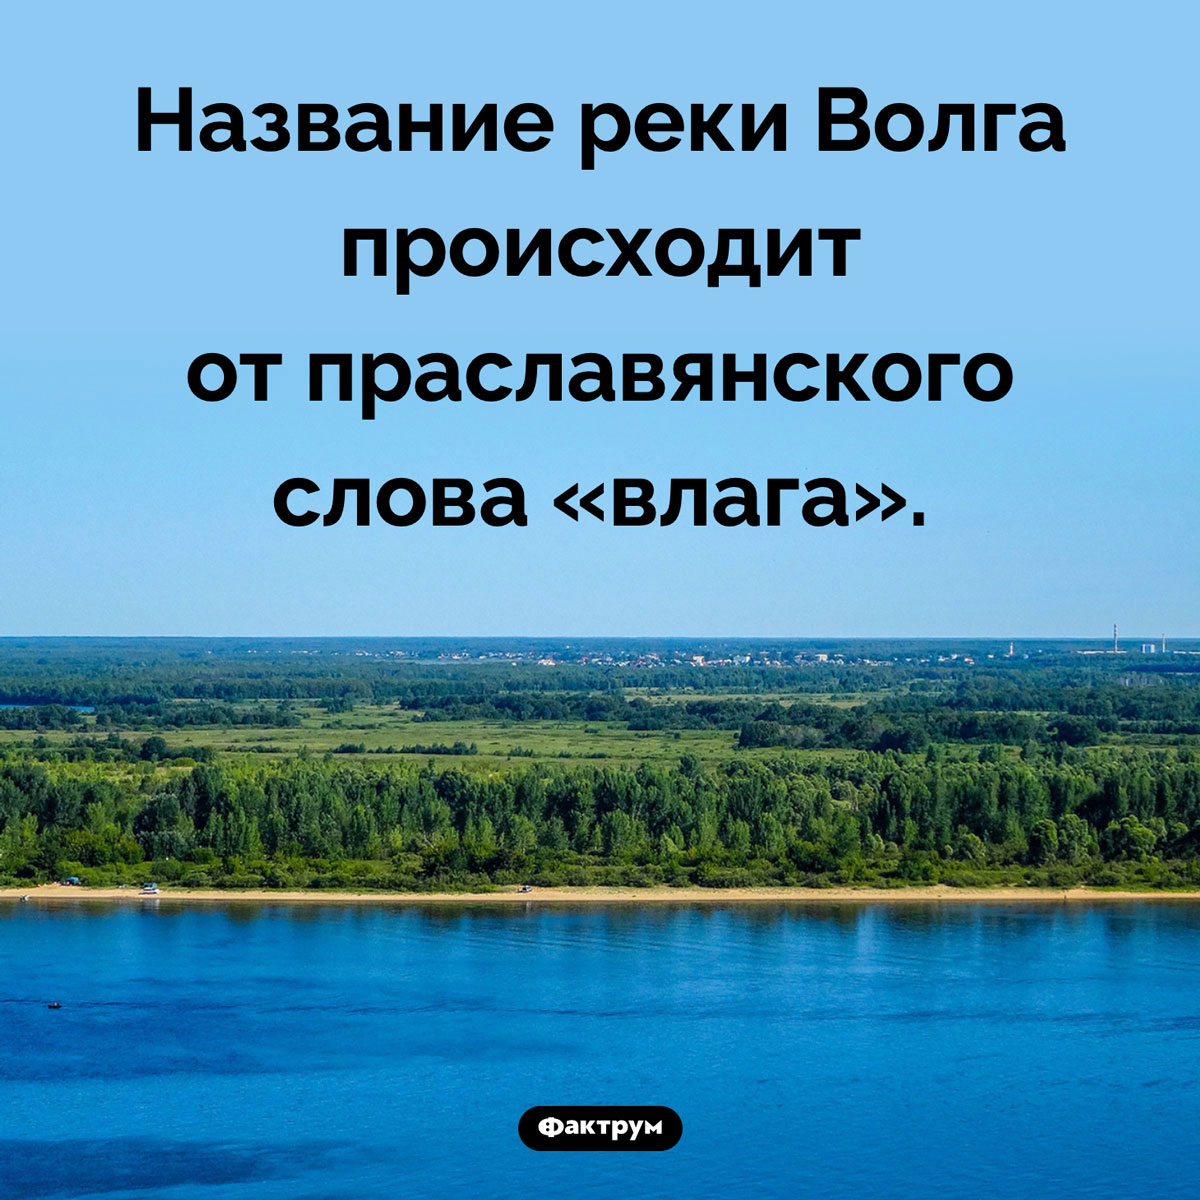 Откуда происходит название Волги. Название реки Волга происходит от праславянского слова «влага».